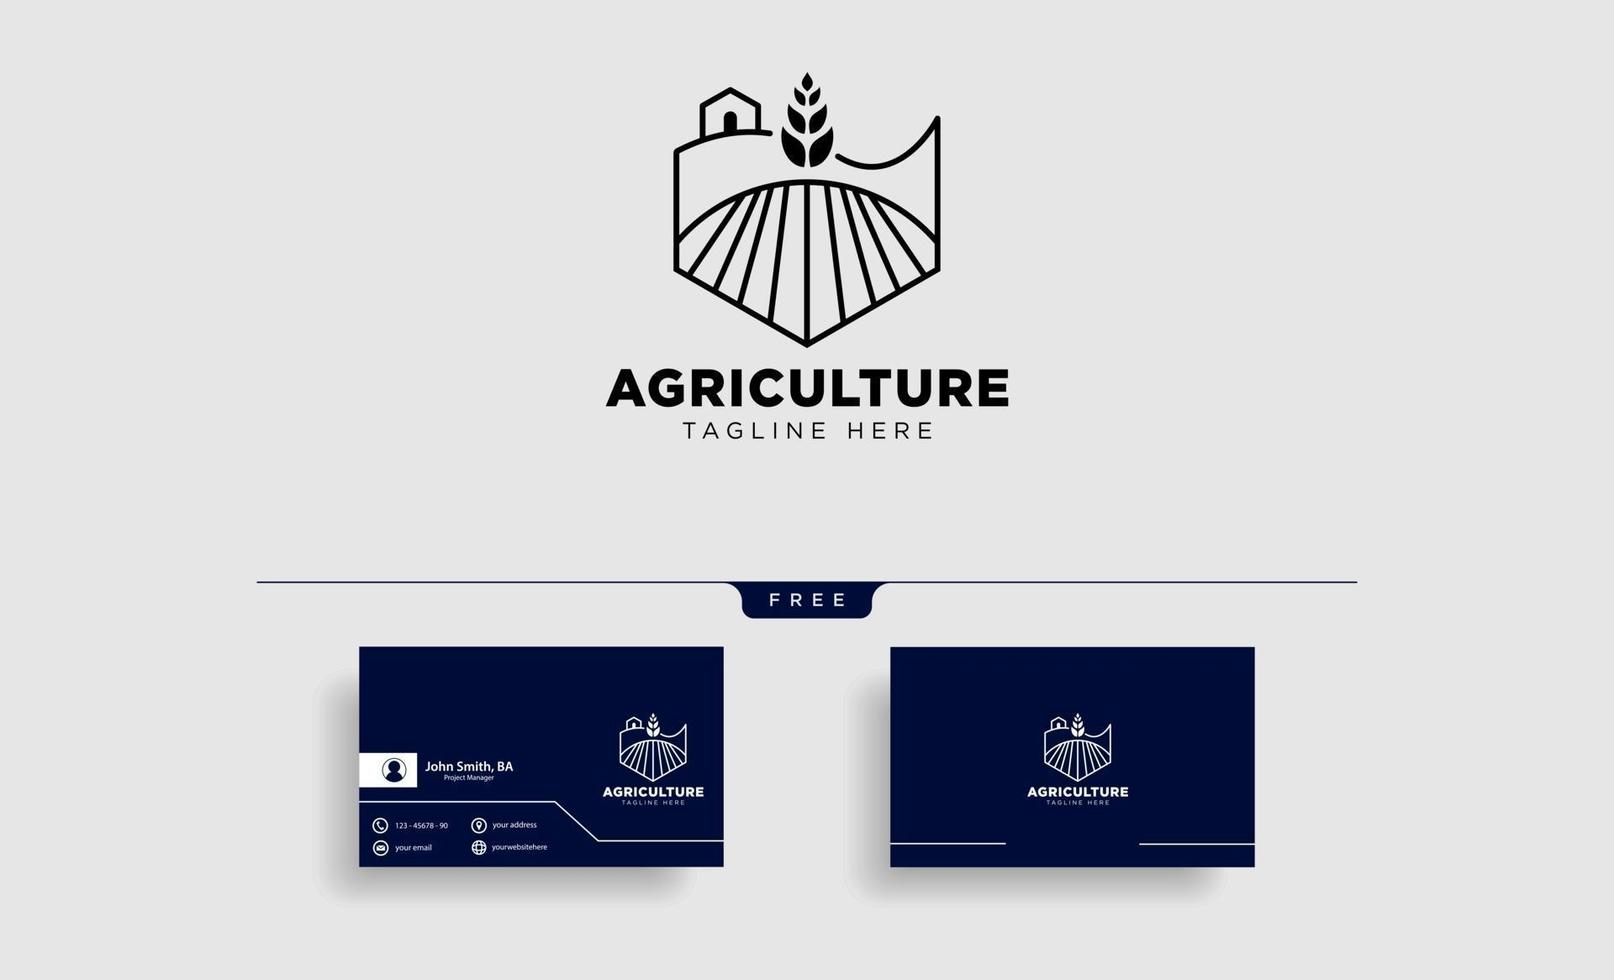 agricultura fazenda linha distintivo modelo de logotipo vintage ilustração vetorial ícone elemento isolado vetor